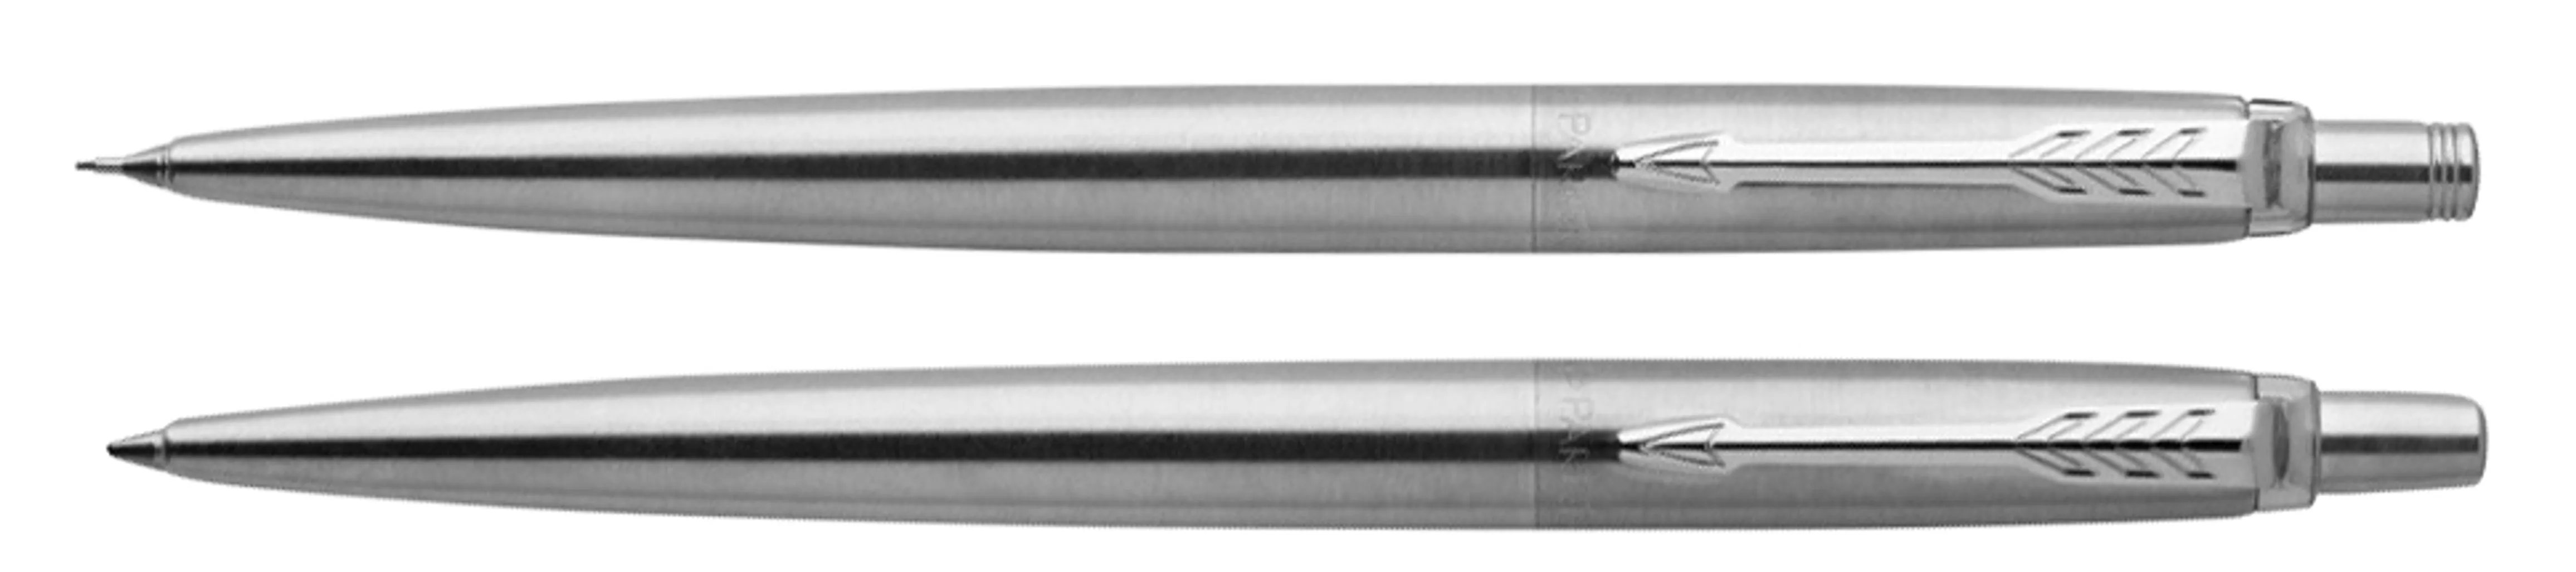 pen & pencil set